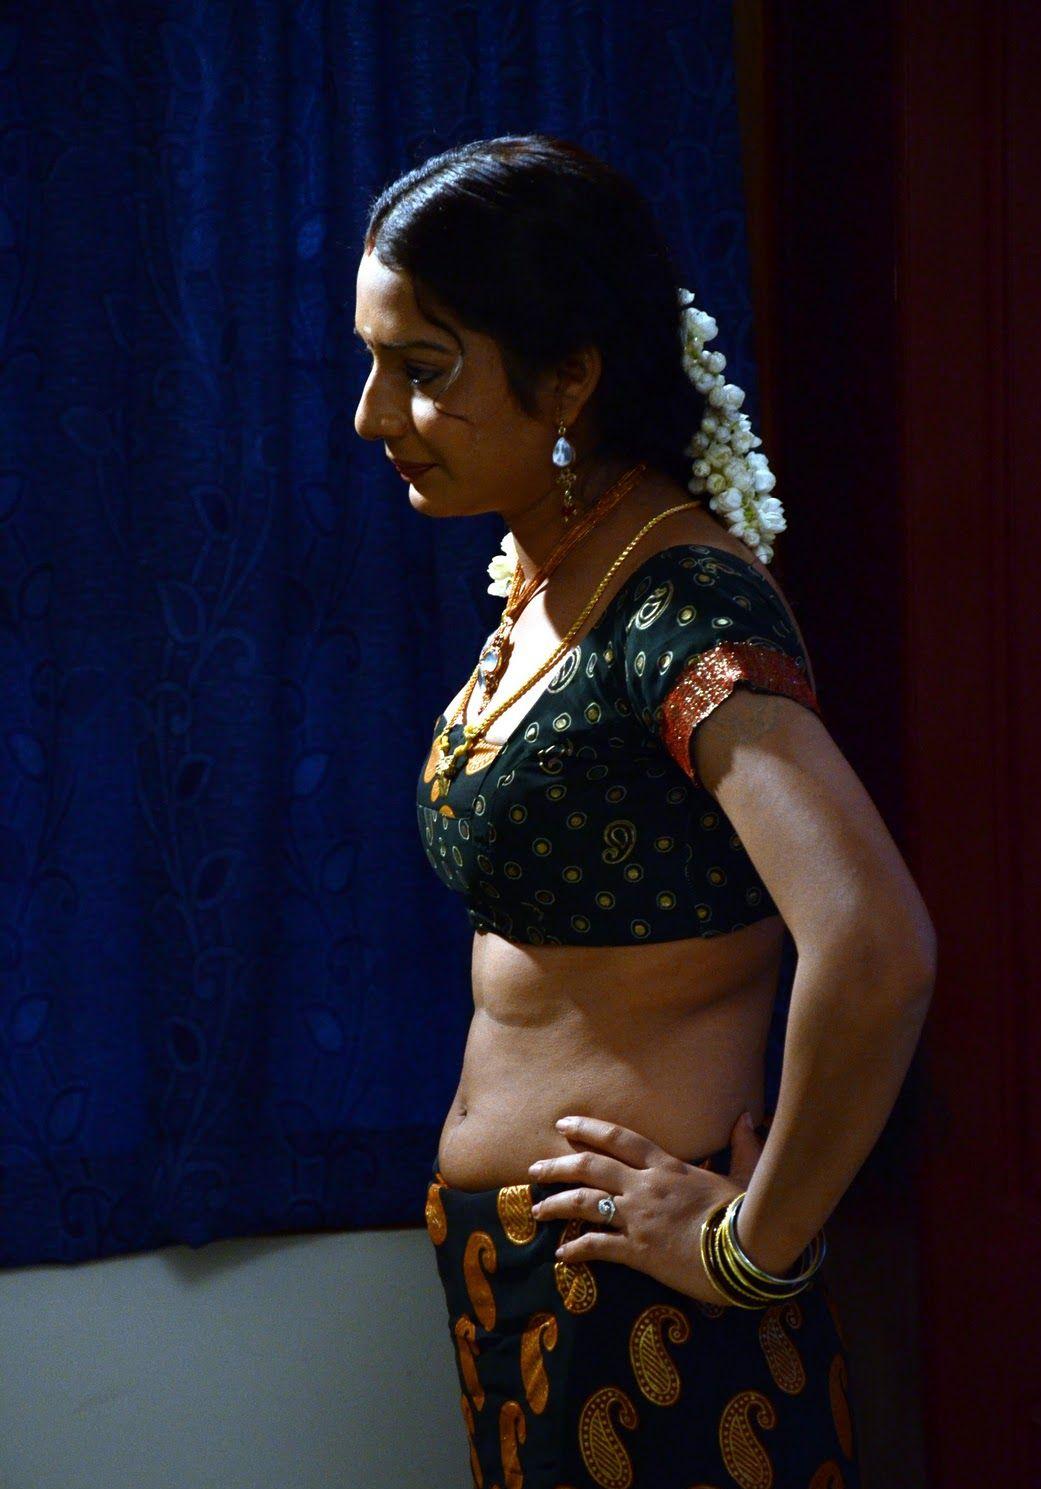 Indian actress tabu scane